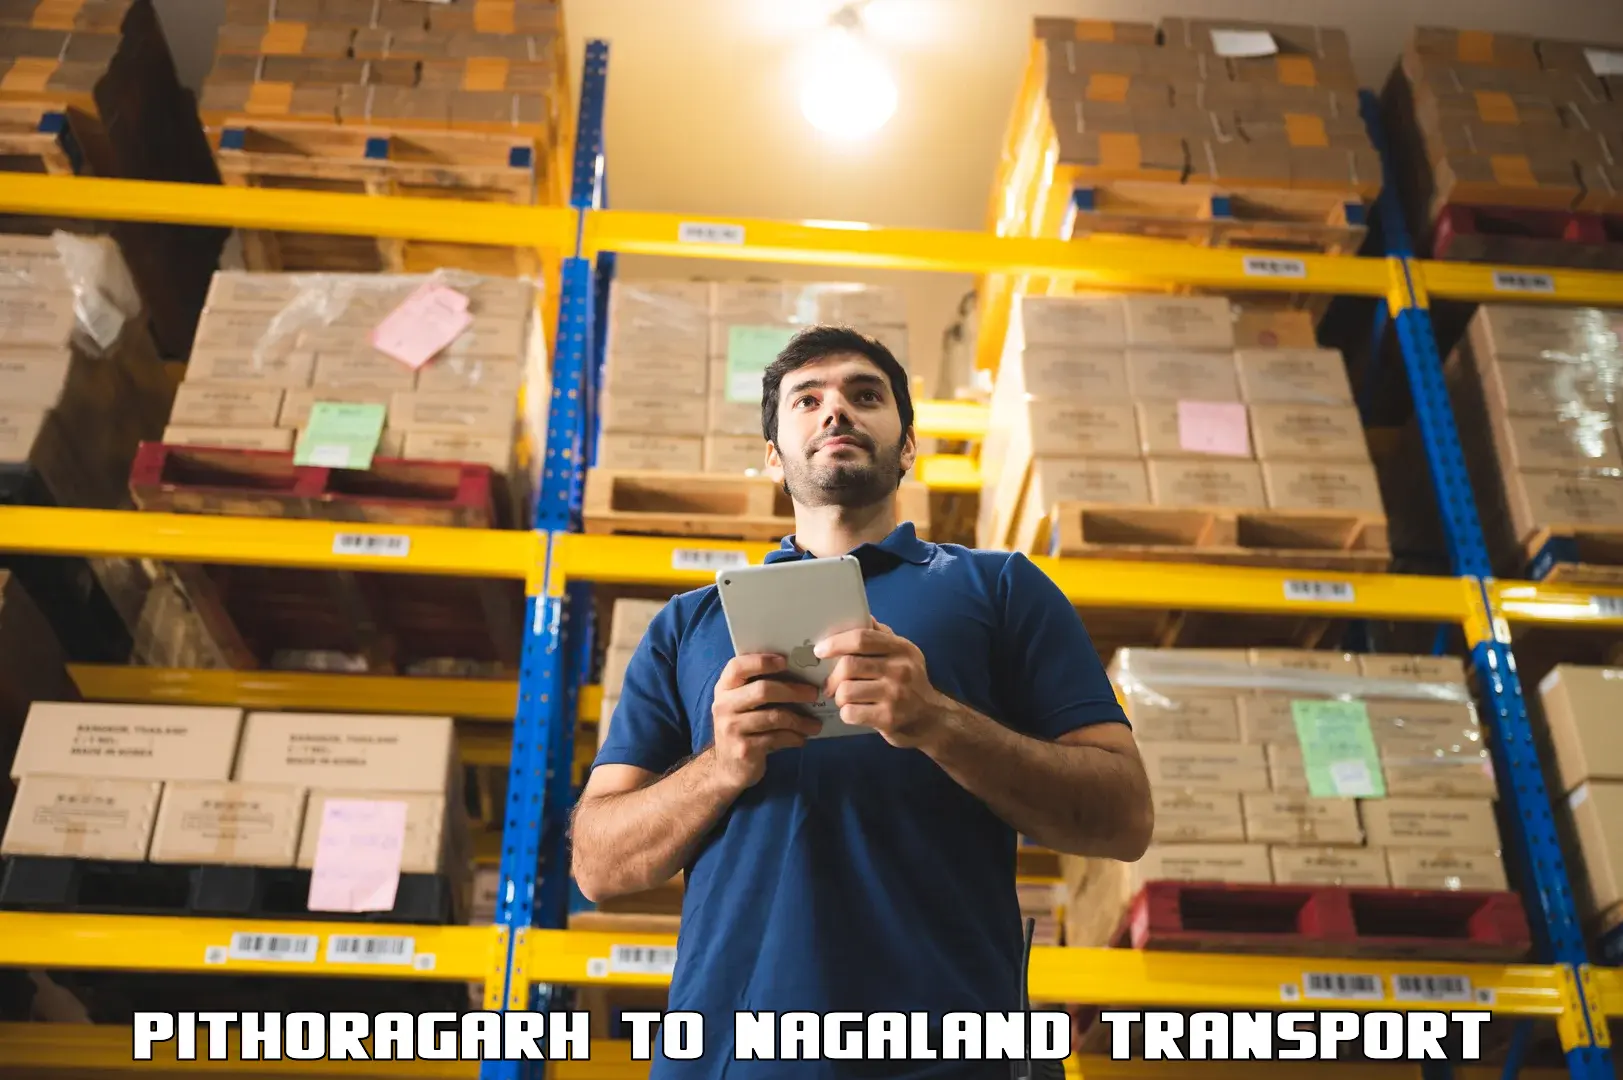 Furniture transport service Pithoragarh to Nagaland